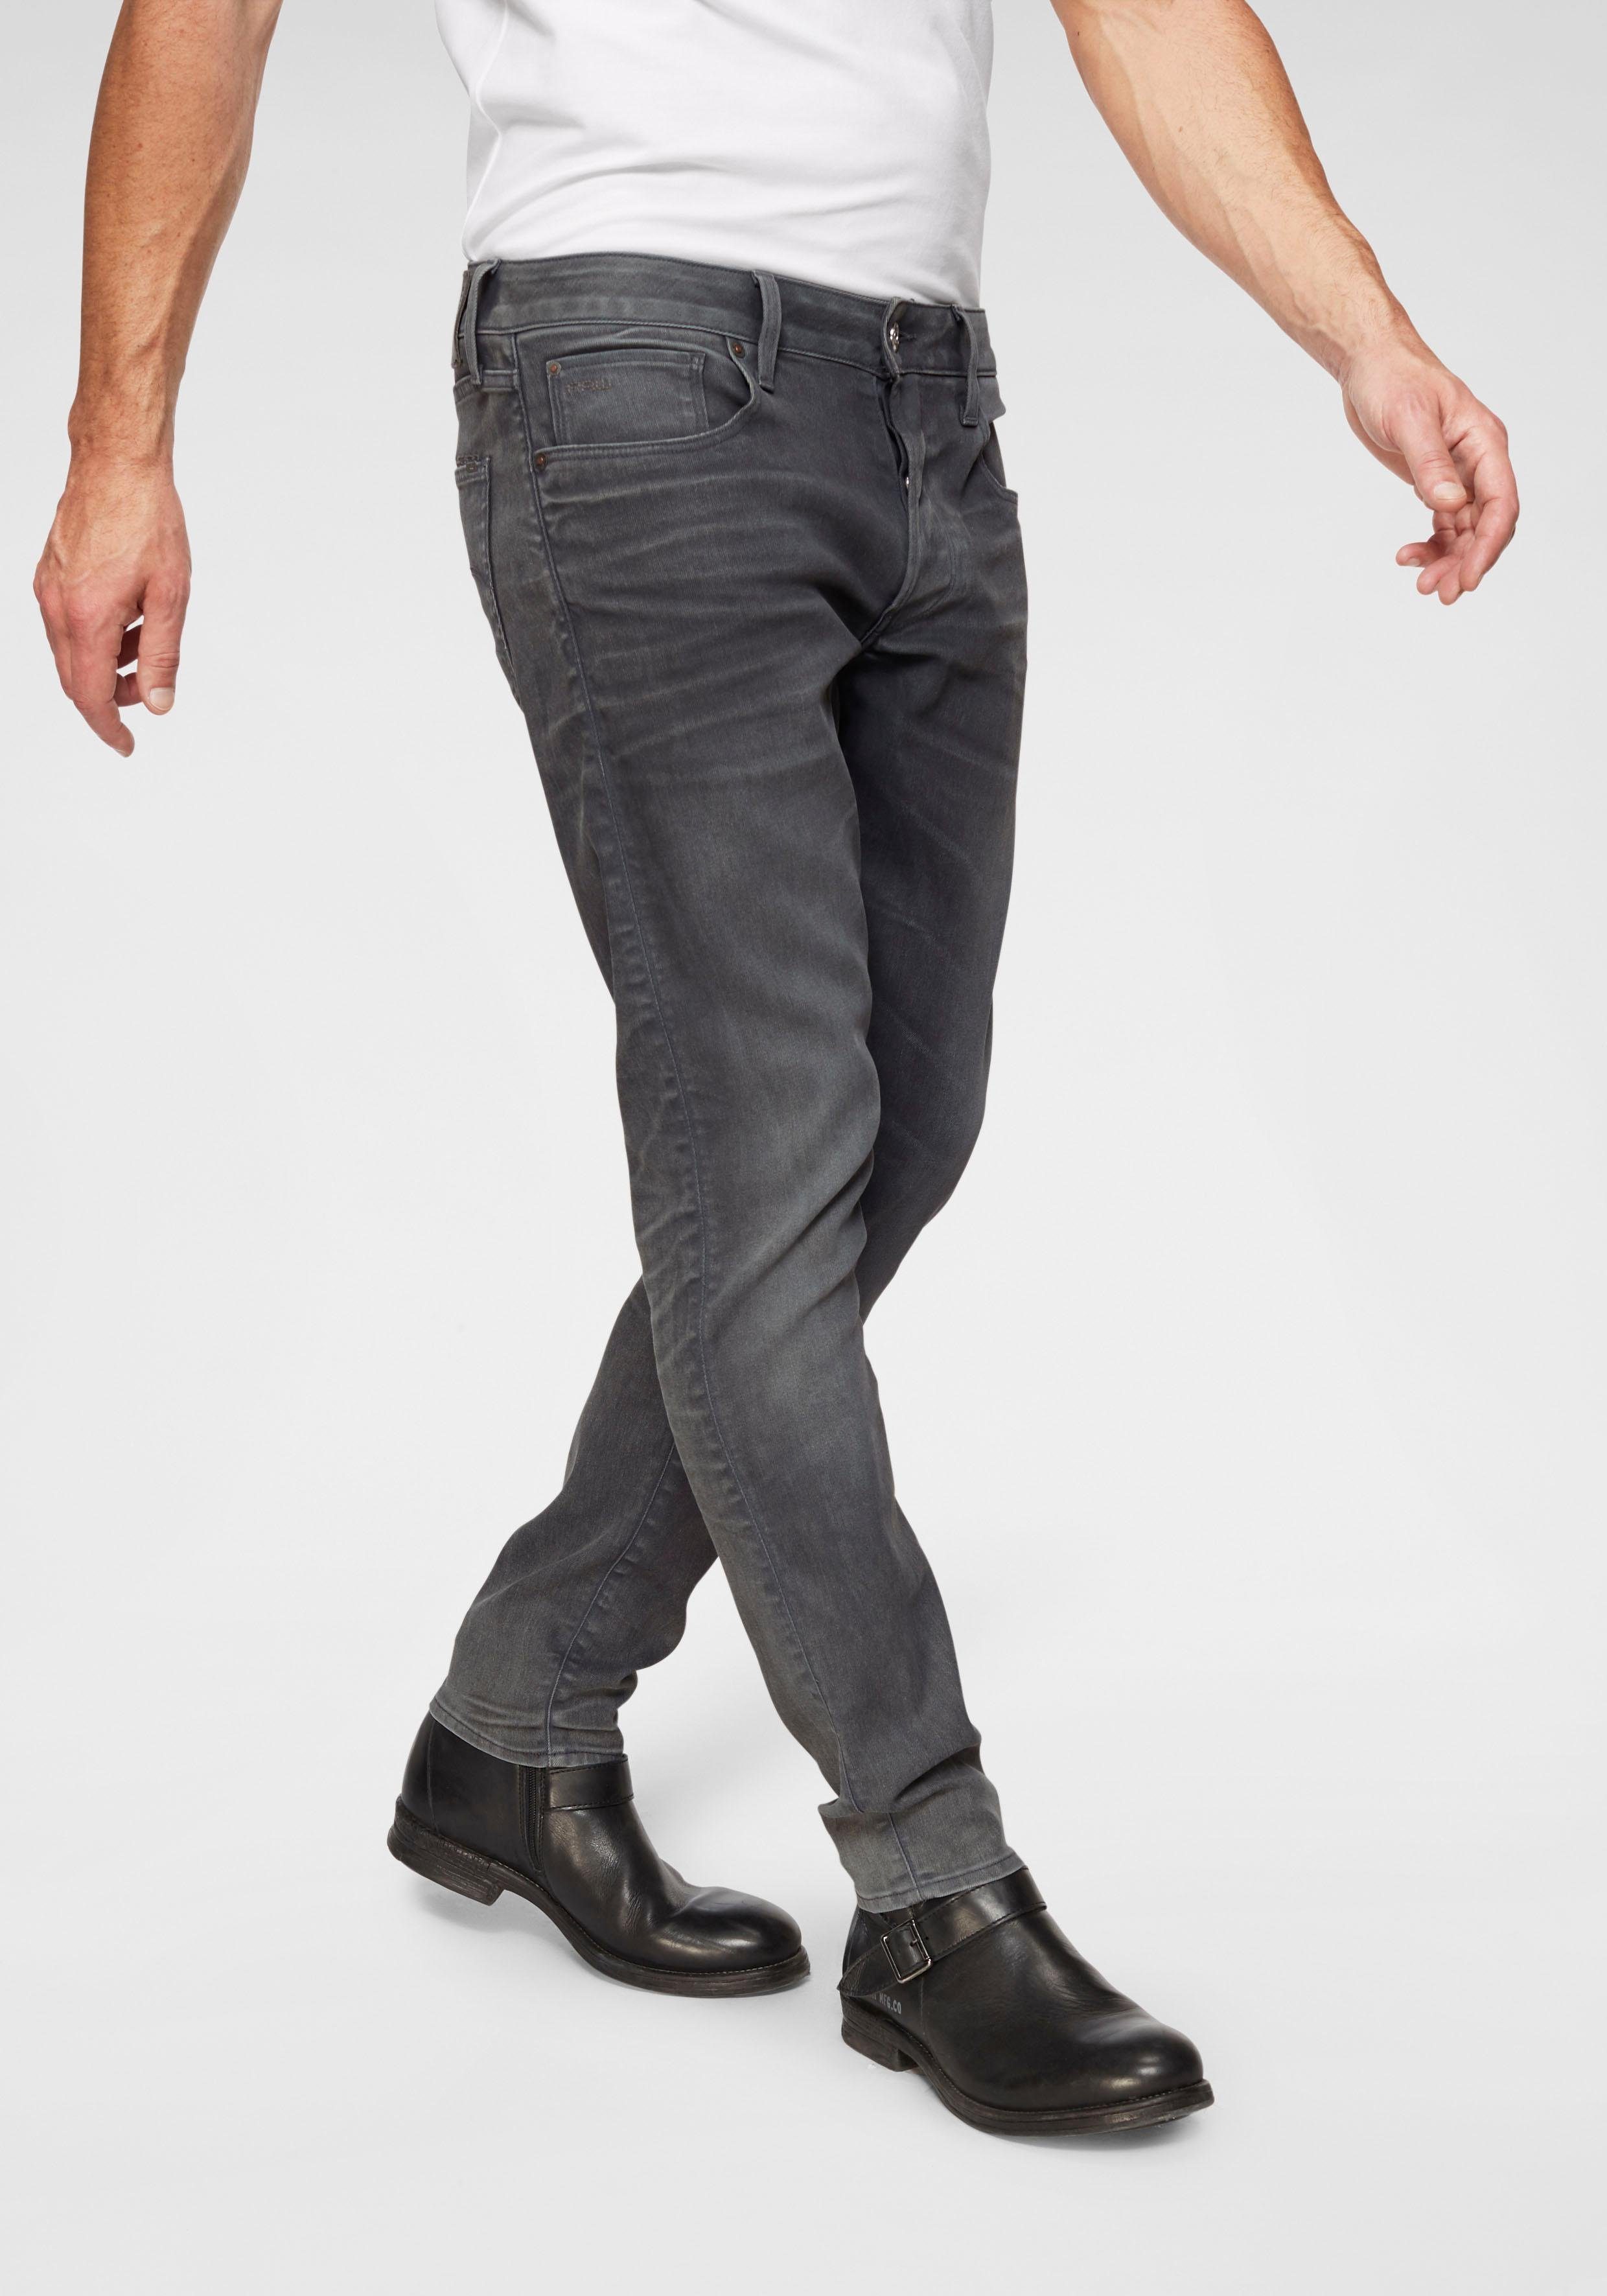 Outlet-Aufmerksamkeit G-Star RAW Slim-fit-Jeans 3301 cobler Slim dark aged